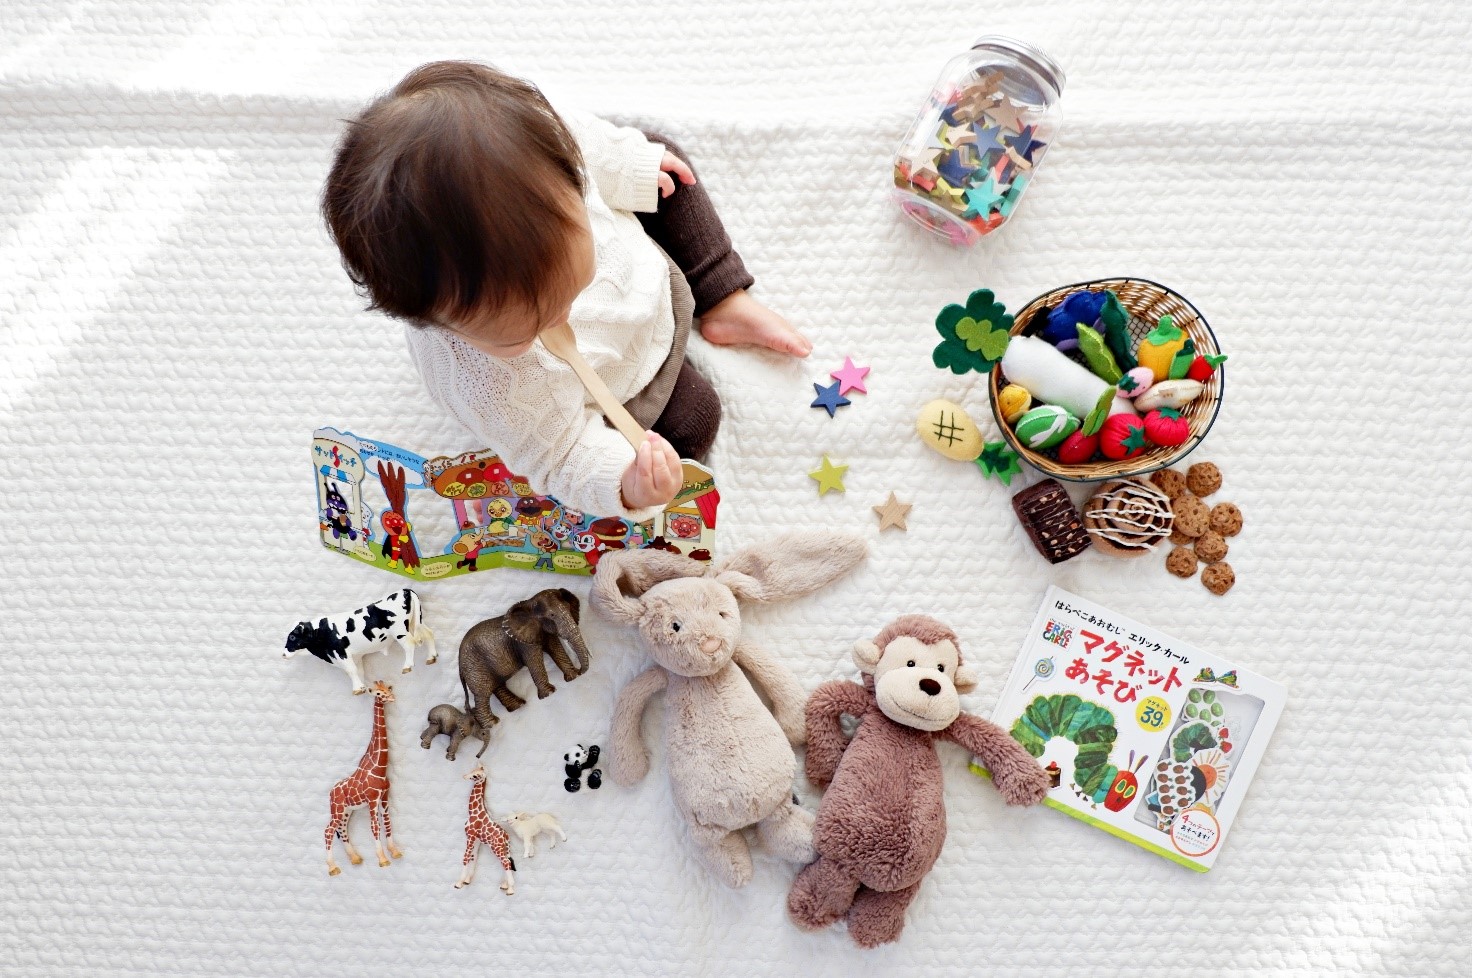 Дидактические и развивающие игрушки для школы — товары и наборы для инклюзии в НУШ